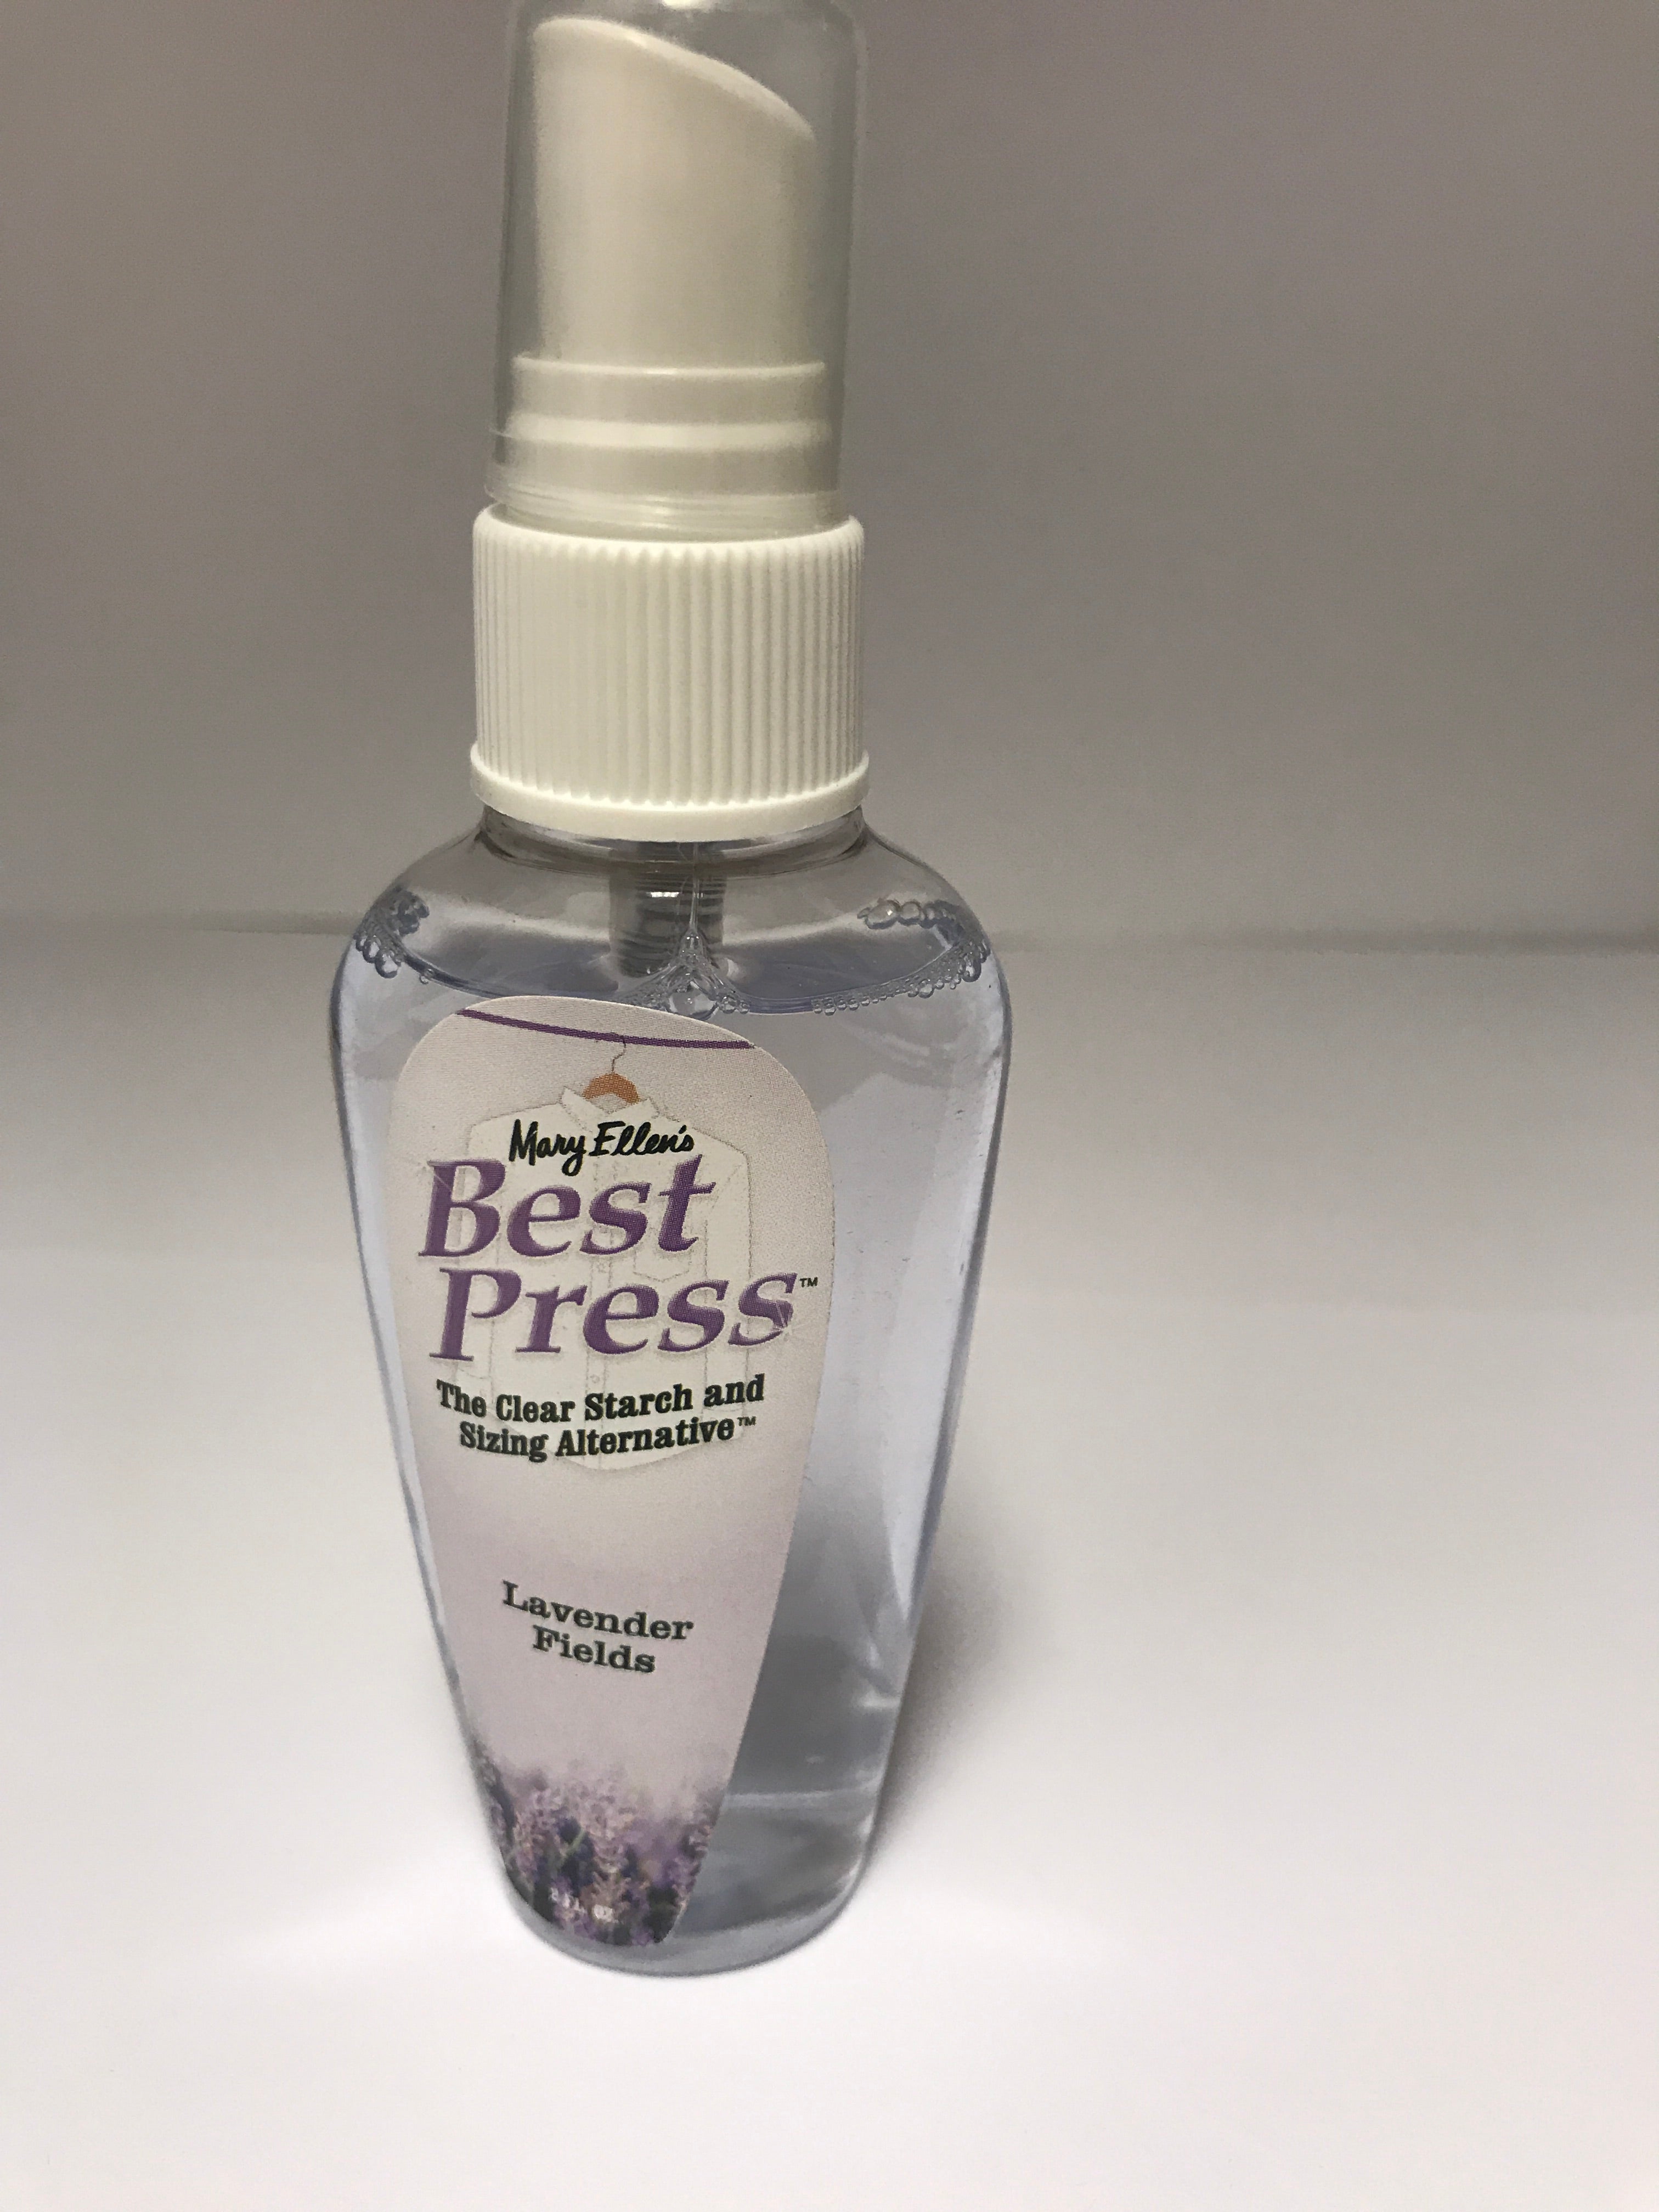 Best Press Little Gems - Lavender Fields - 2 fl oz - MSC15015